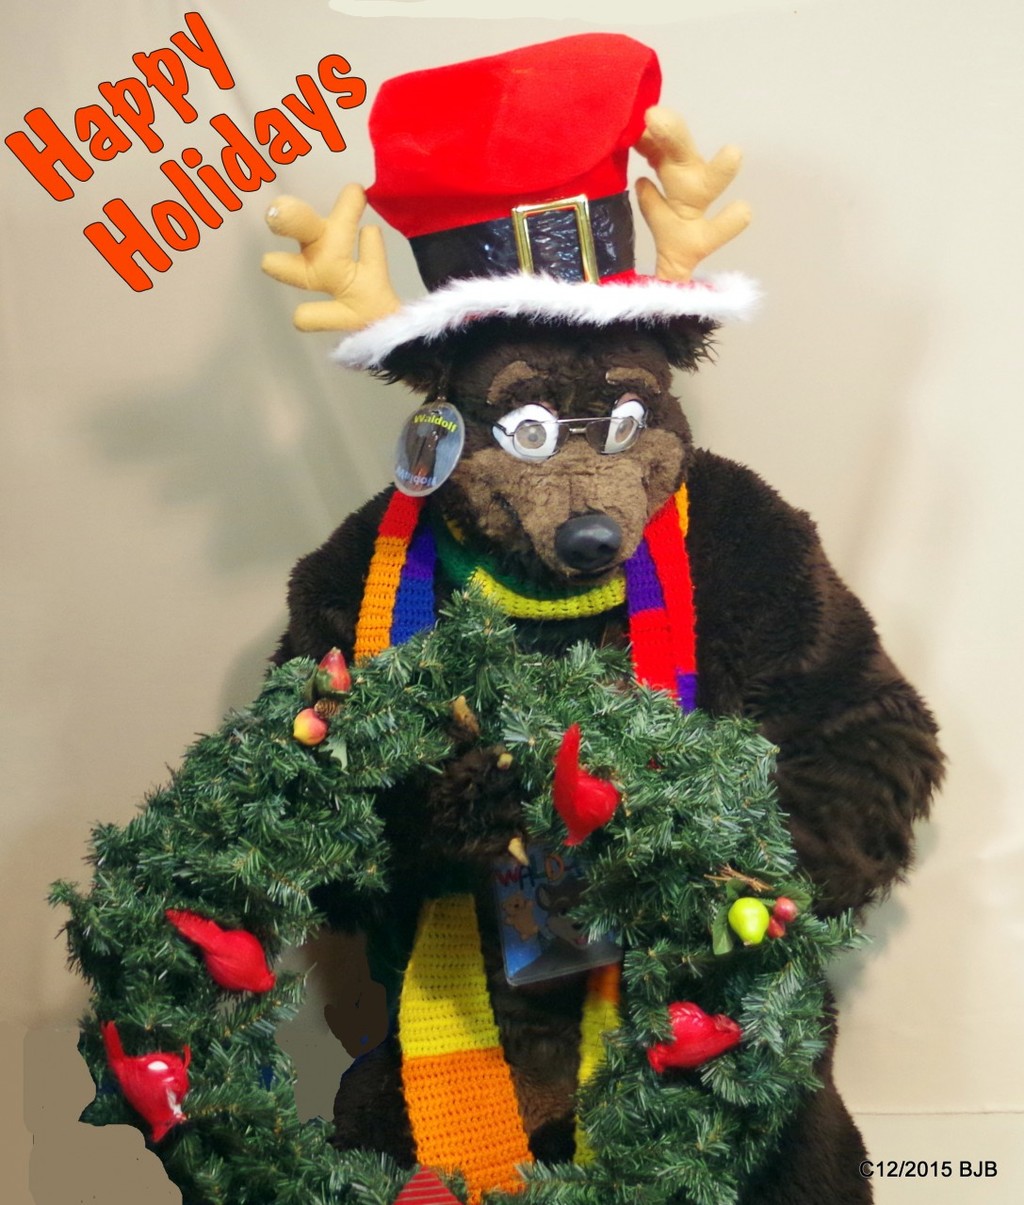 Waldolf and his Christmas wreath